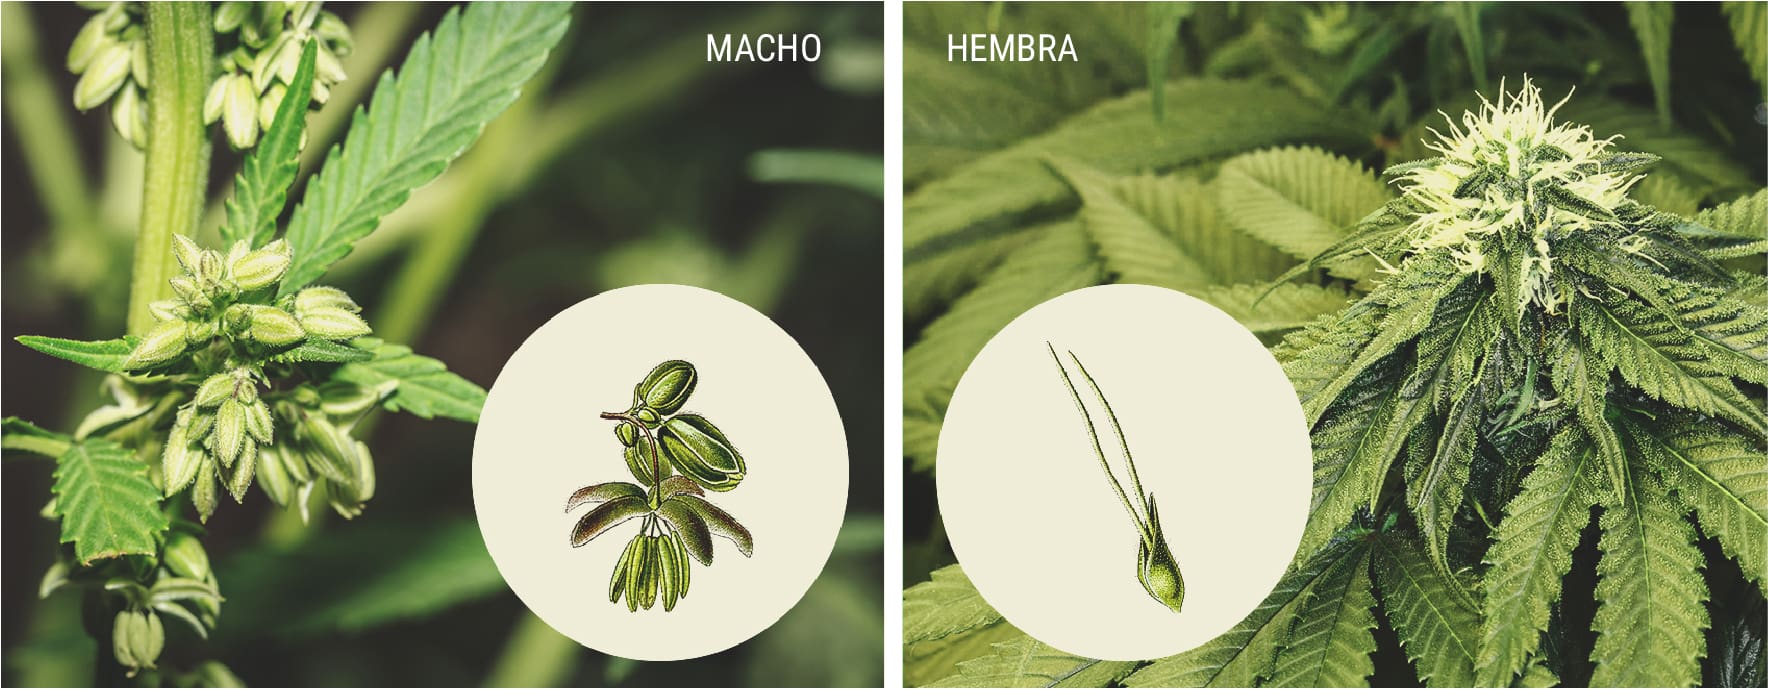 Cómo identificar las plantas de marihuana macho